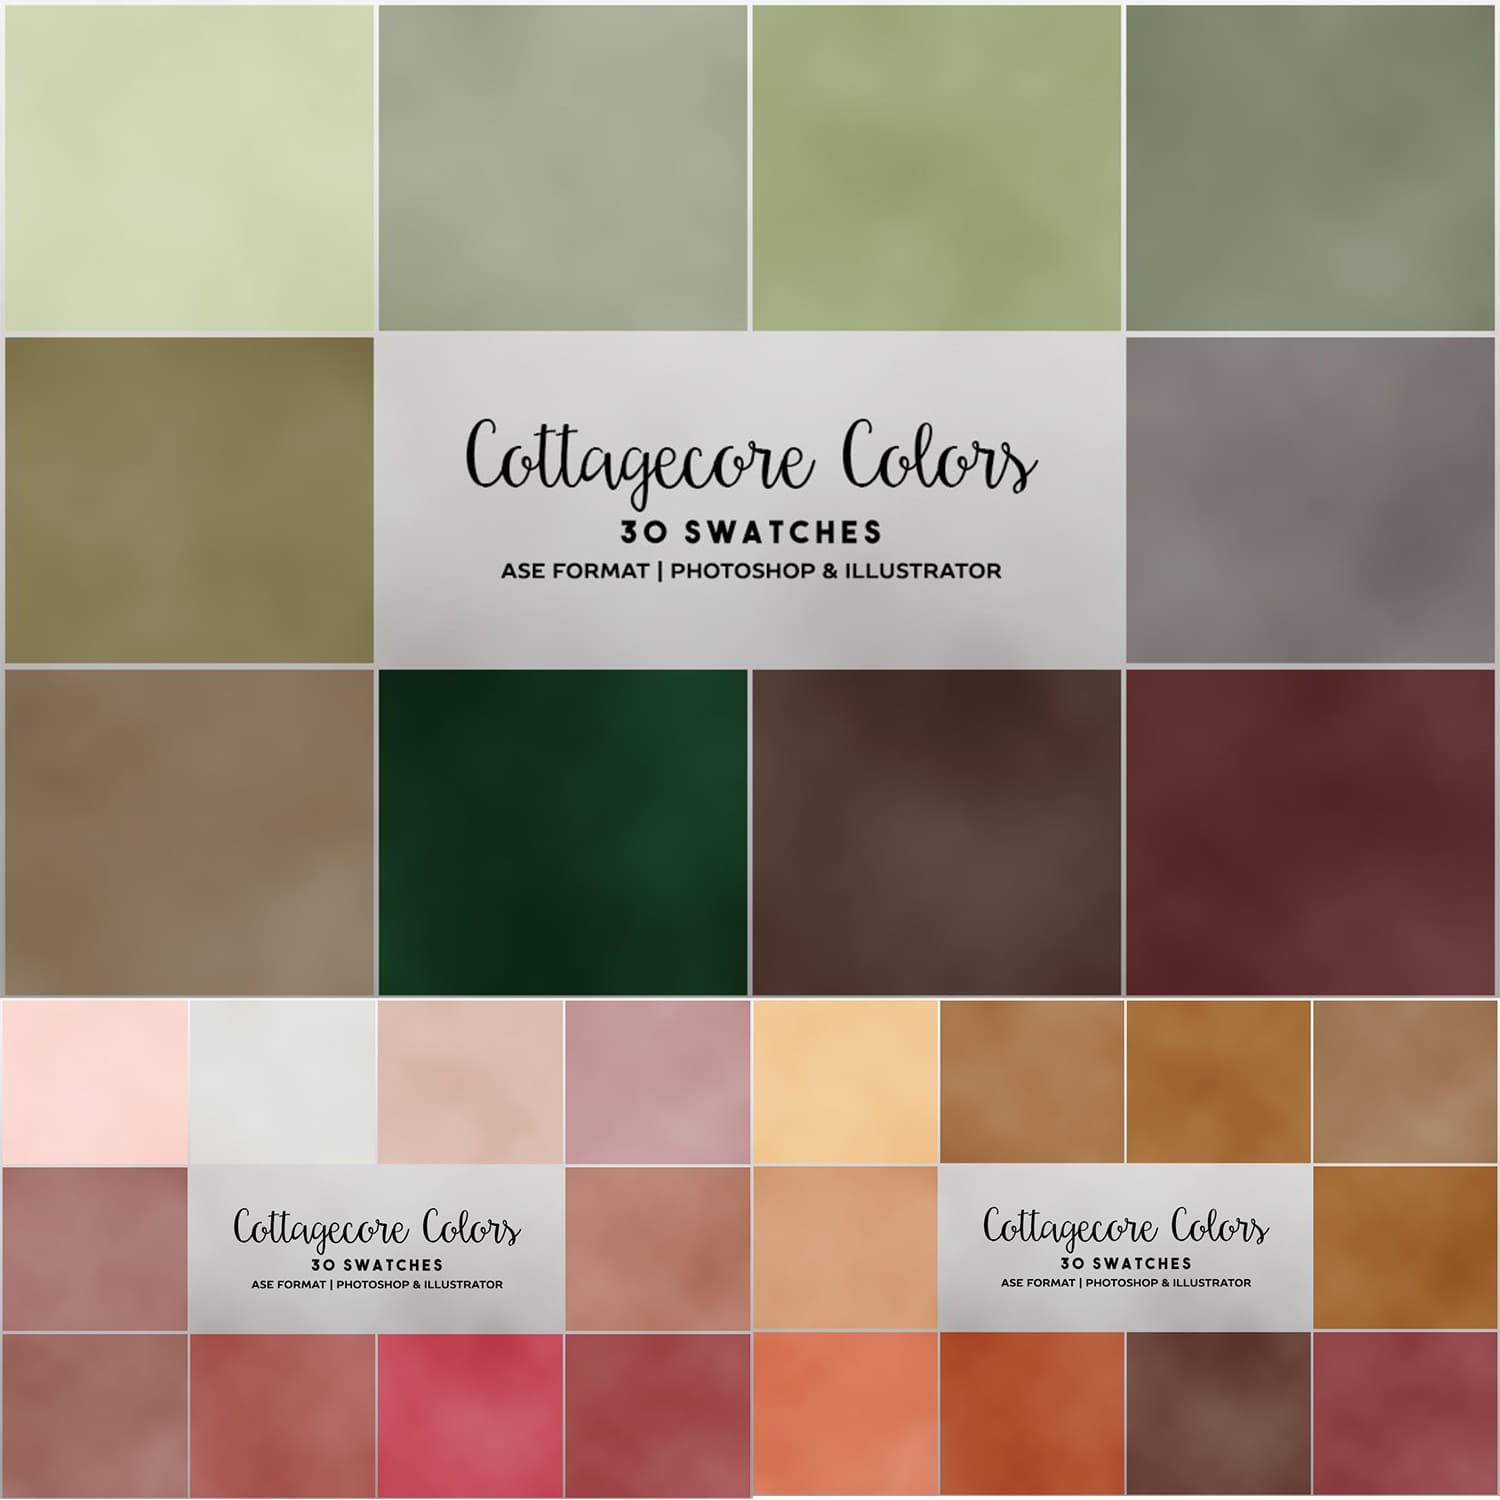 Cottagecore Colors Preview image.